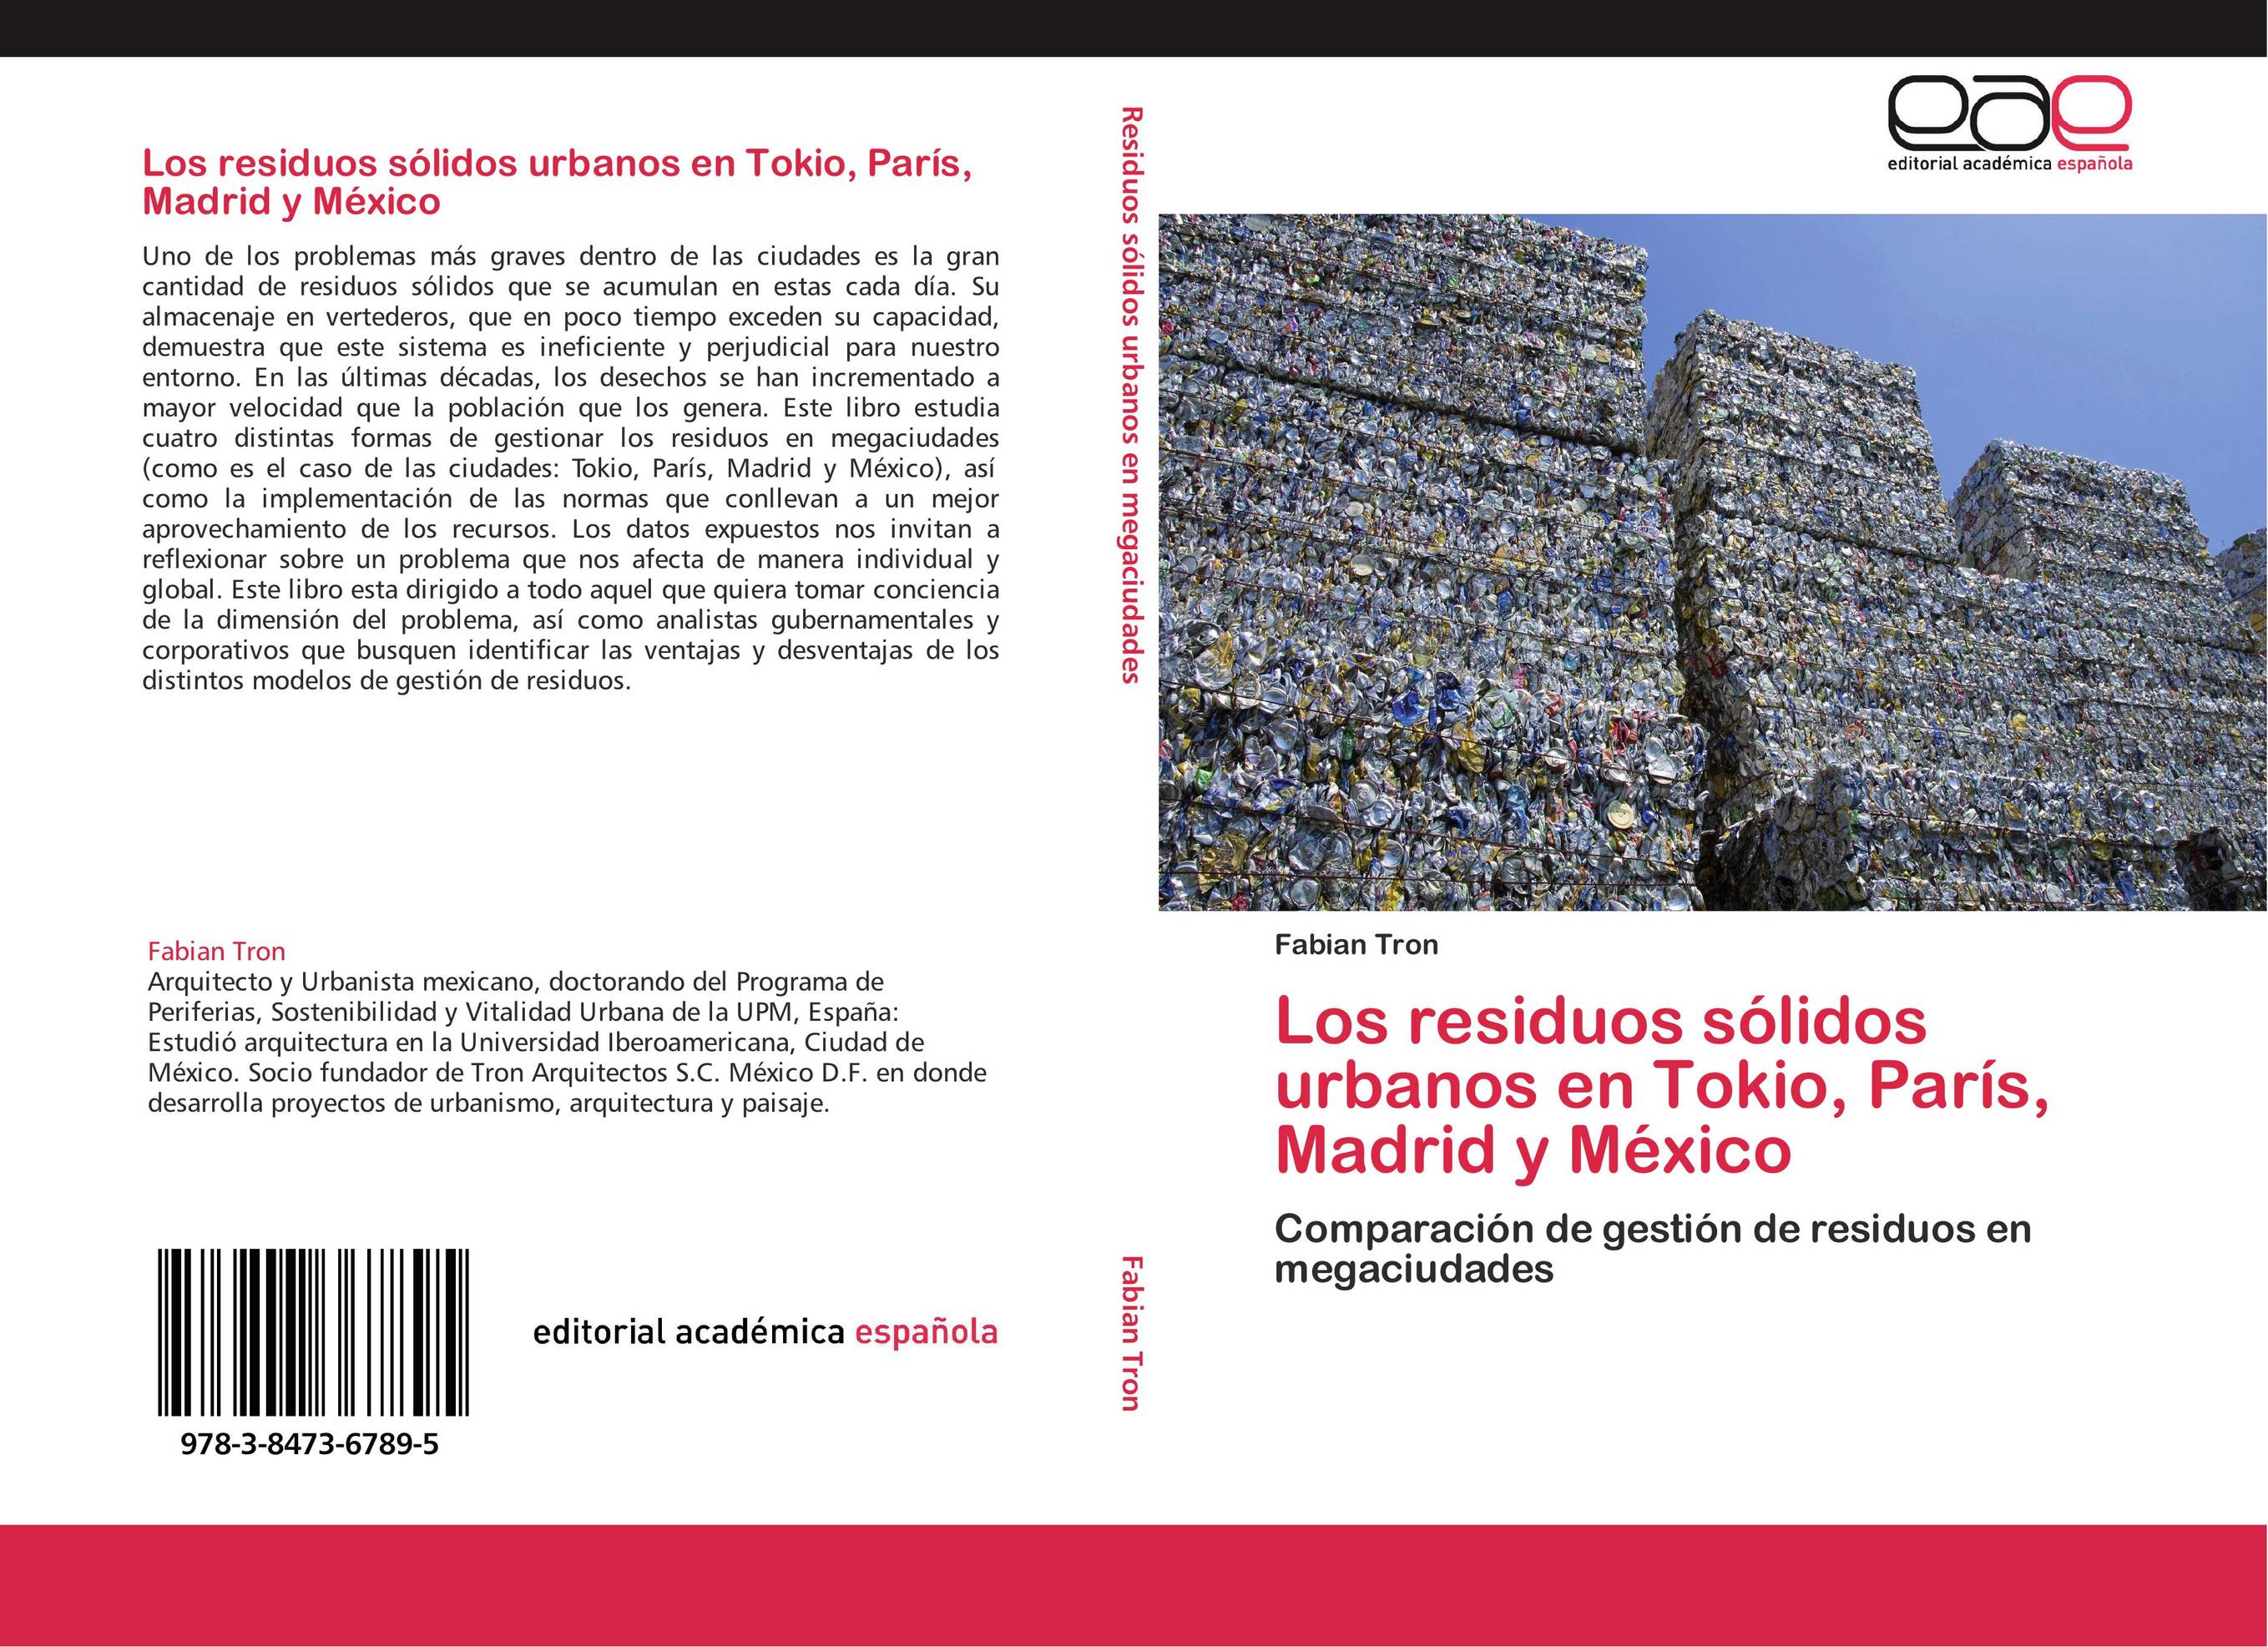 Los residuos sólidos urbanos en Tokio, París, Madrid y México